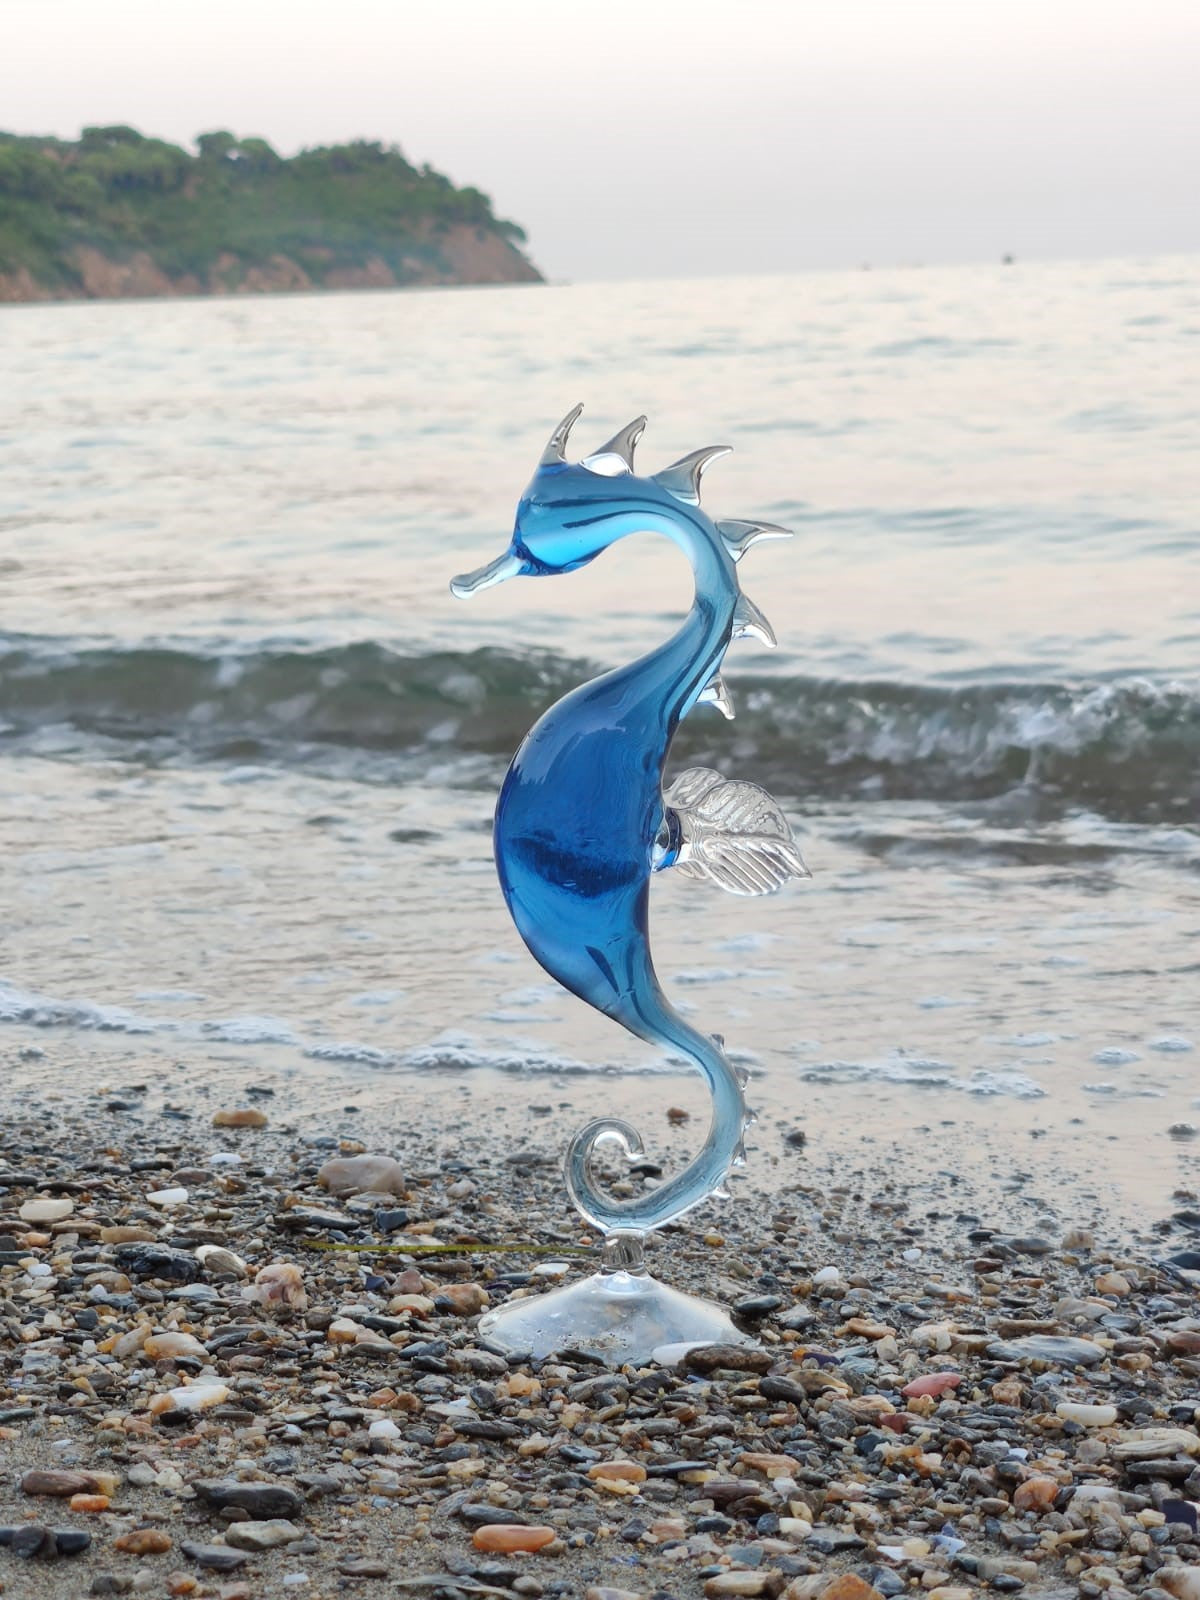 Quem Handmade Glass Seahorse Figurine, Home and Office Figurine Decor, Animal Glass Art.